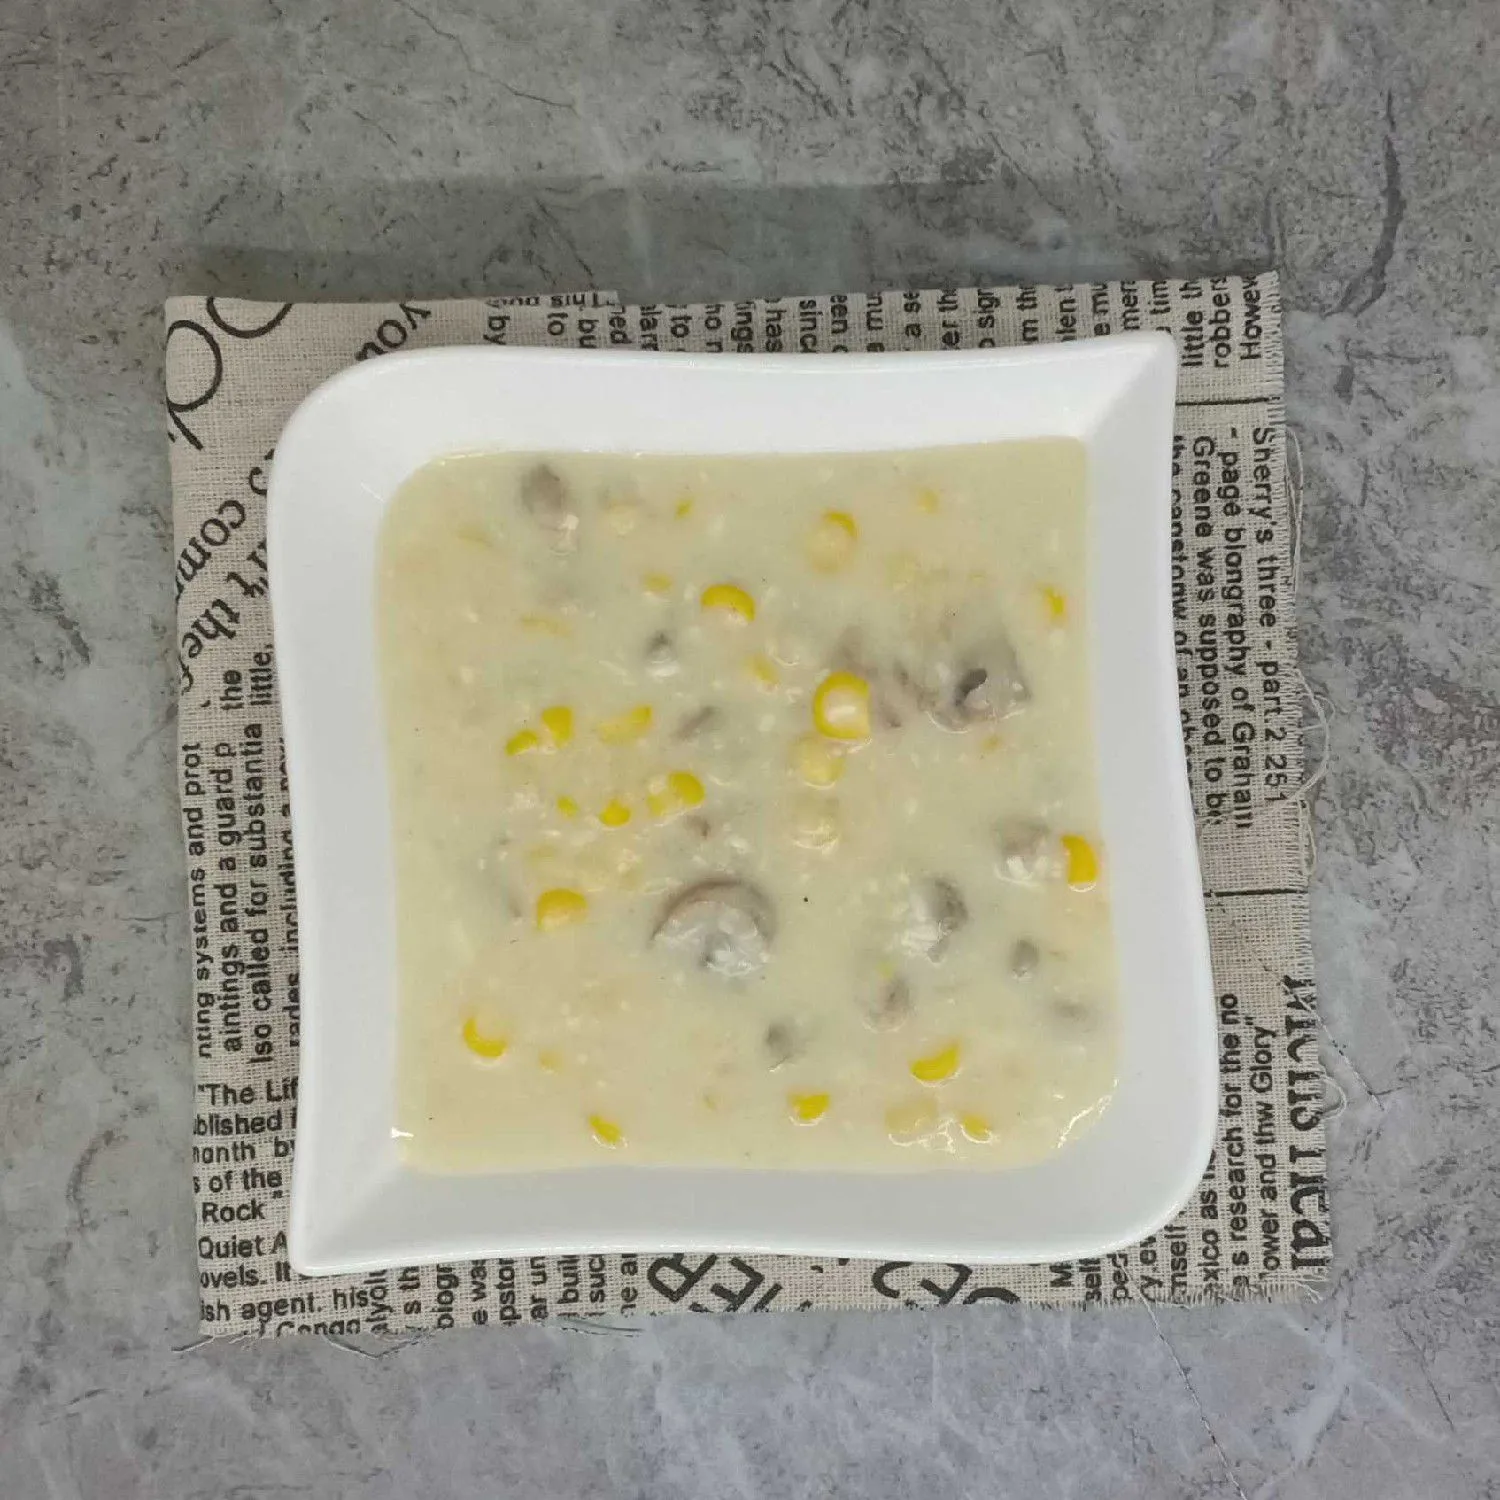 Mushroom Cream Soup #JagoMasakMinggu4Periode3